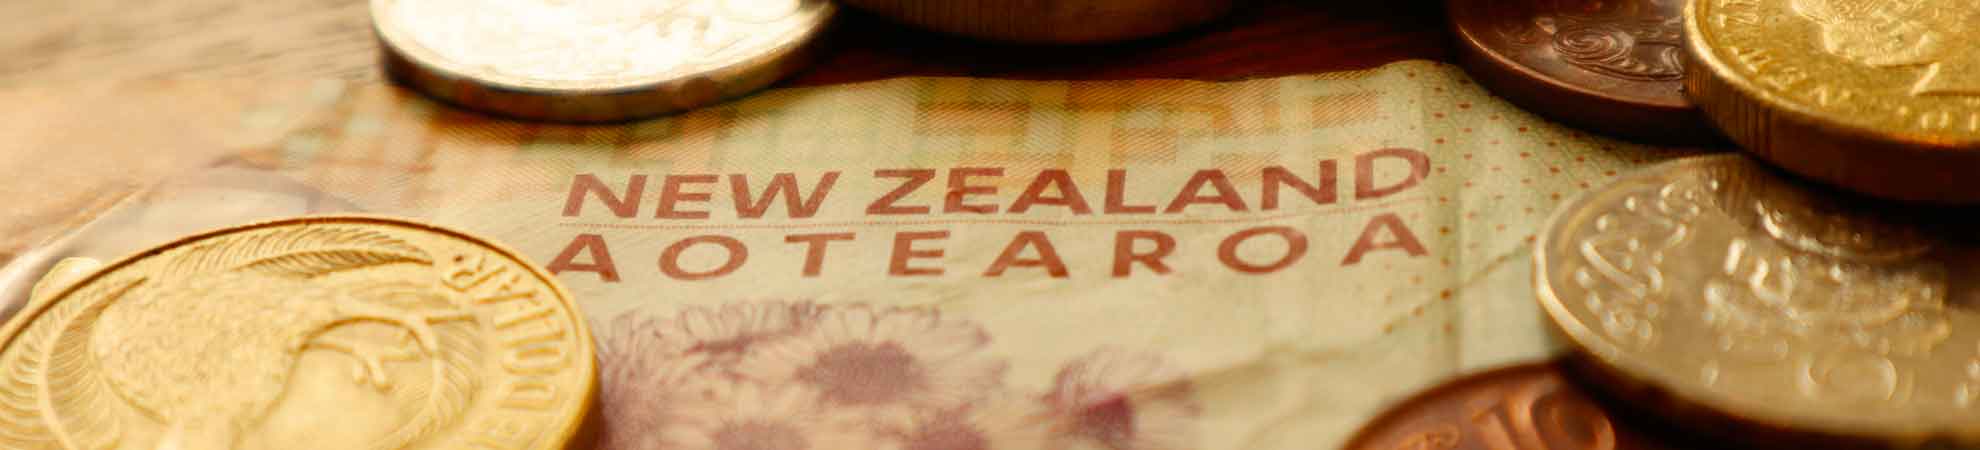 Tout ce qu'il y a à savoir sur la monnaie de la Nouvelle Zélande et commente se procurer cette devise une fois dans le pays 